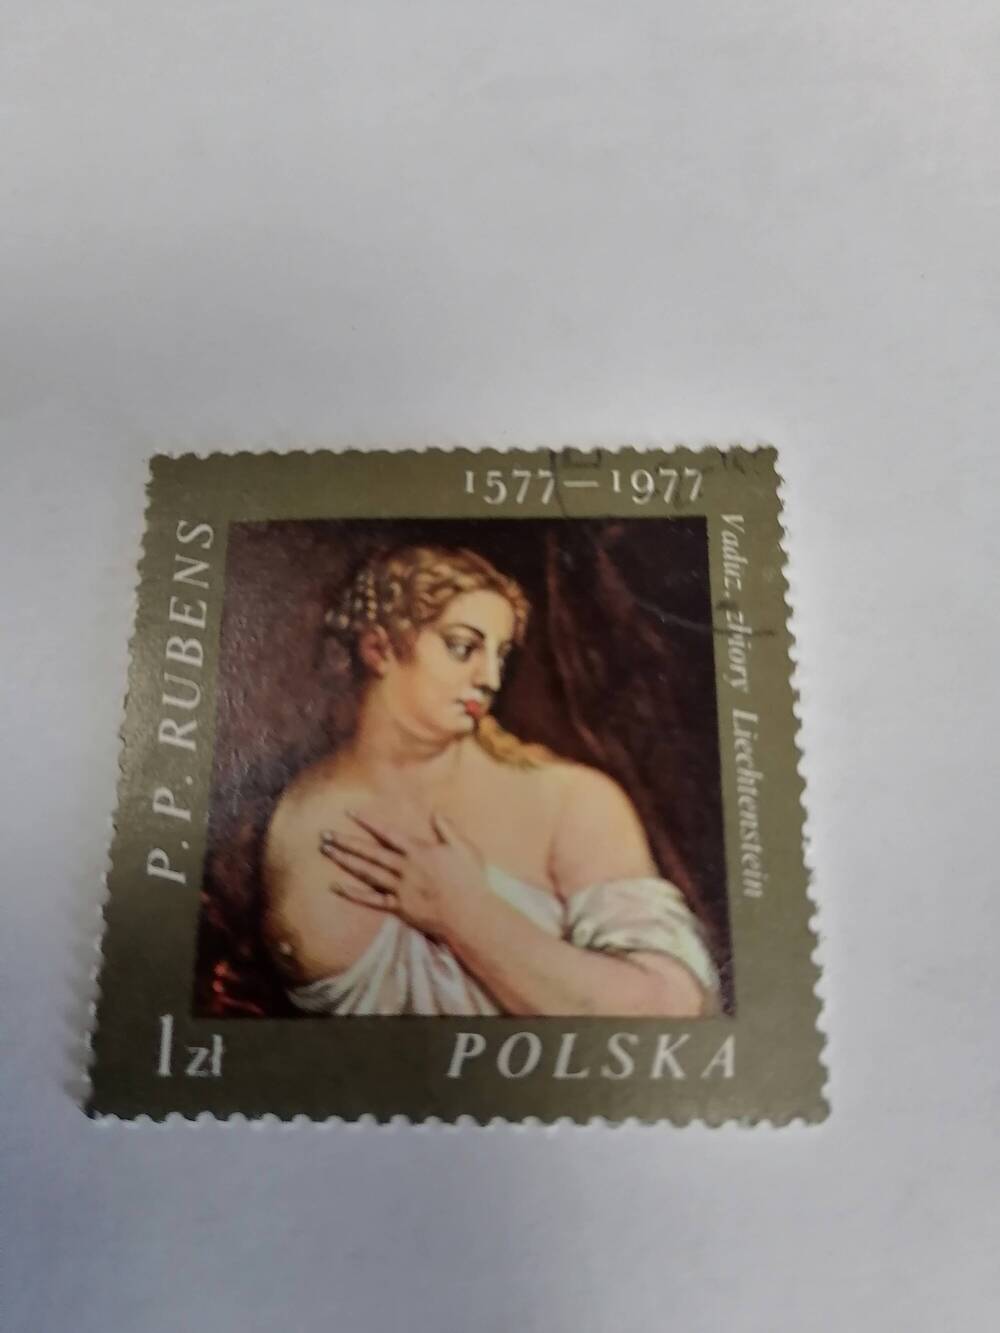 Марка почтовая негашеная, Polska,Польша,1977 г,Искусство,P.P.Rubens 1577-1977 Vaduz